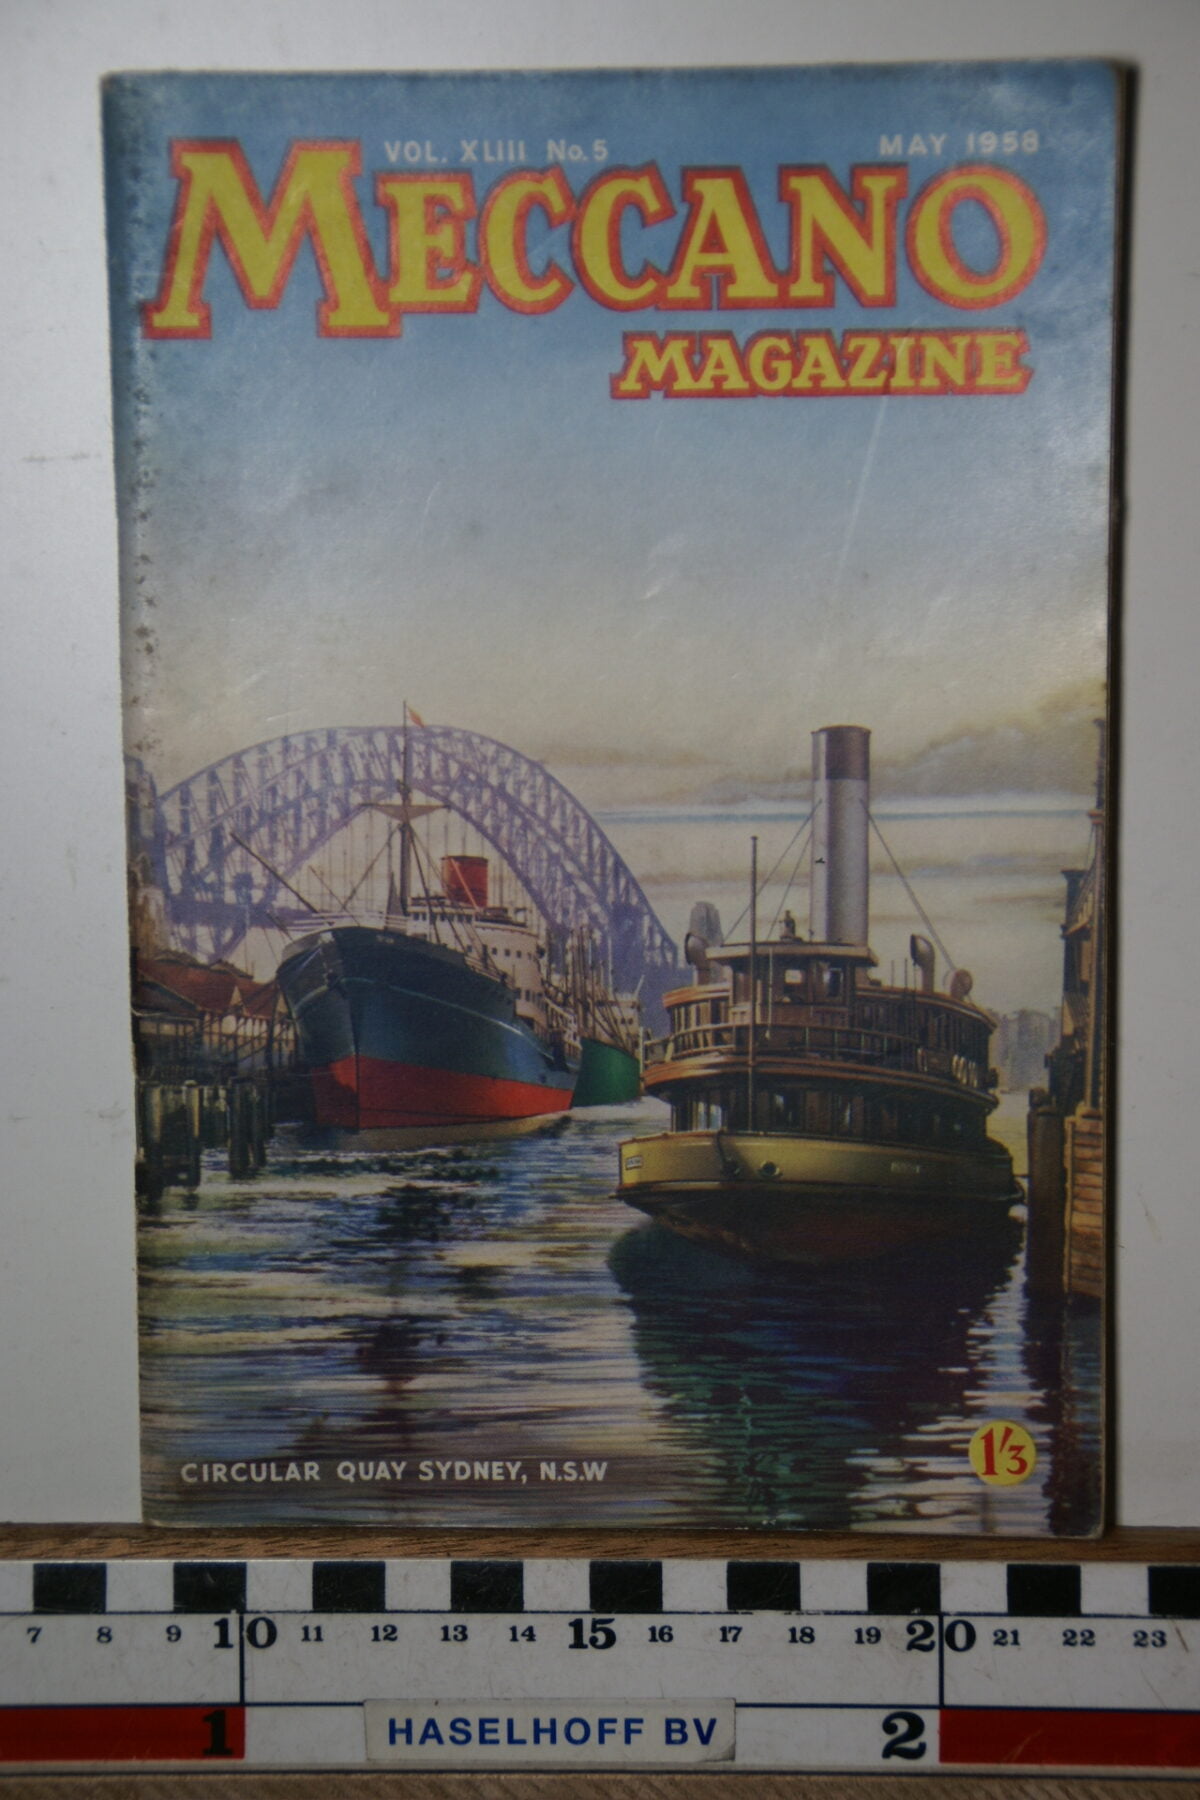 DSC02815 1958 may Meccano Magazine, English-d04451b6